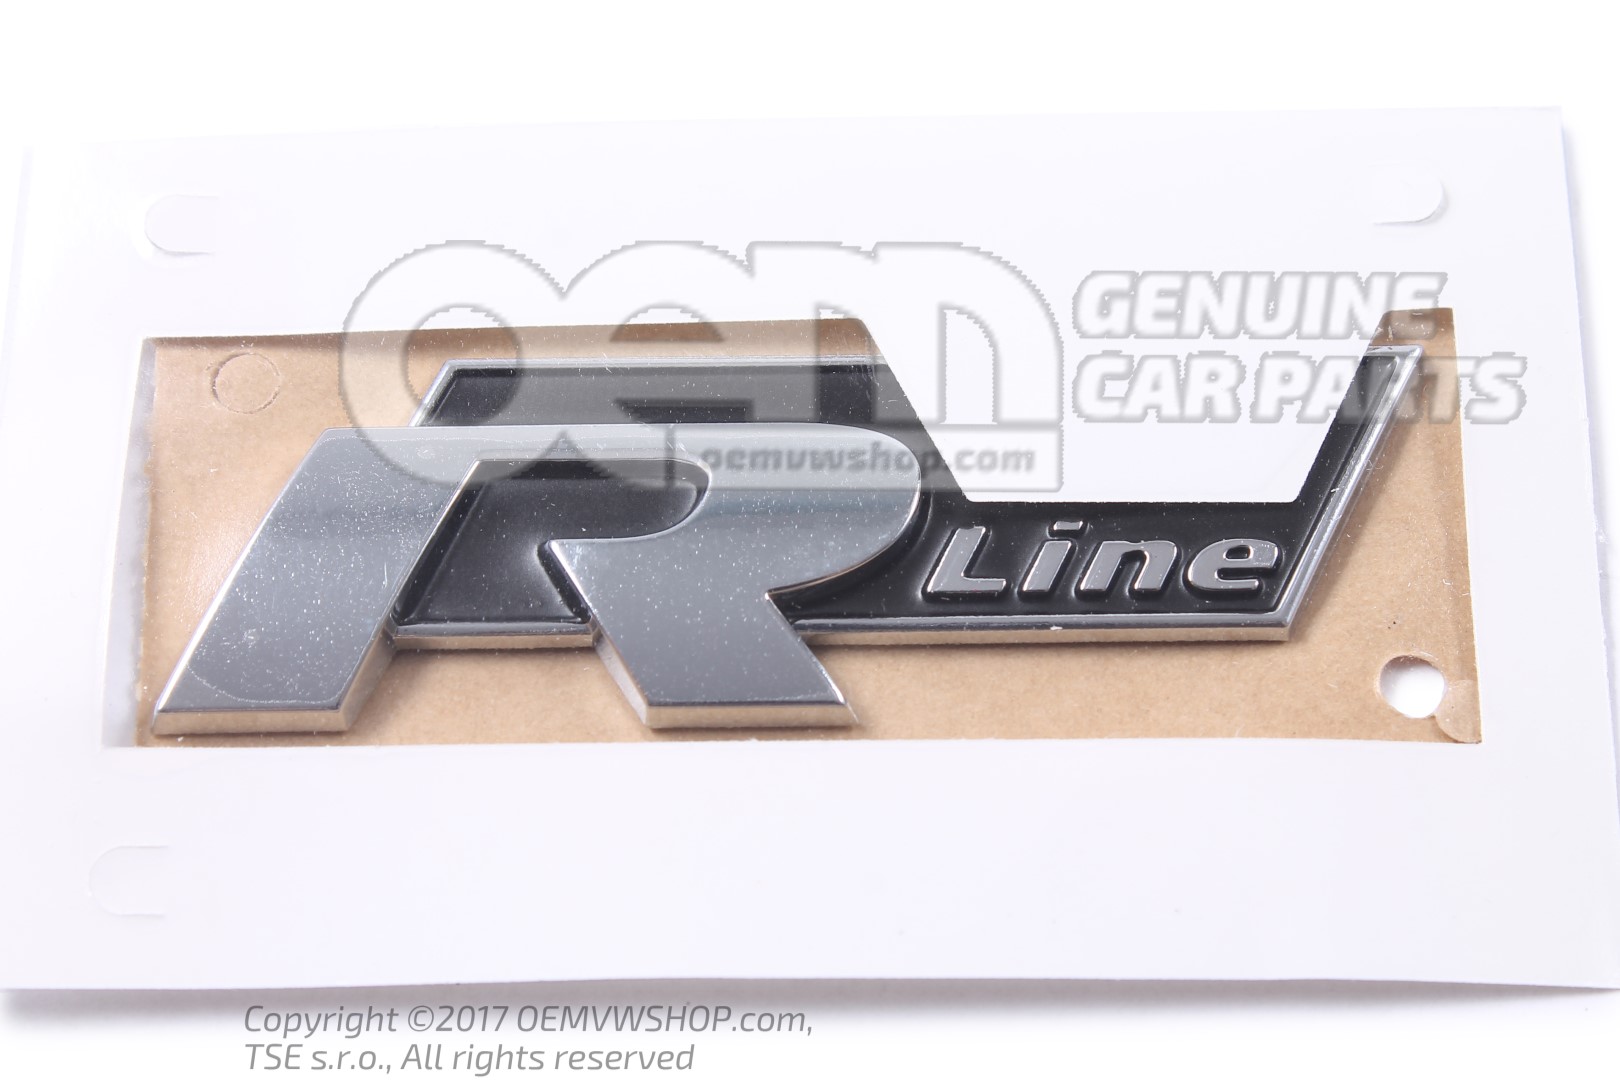 VW Original Cc R-Line Logo Emblem For Radiator Grille